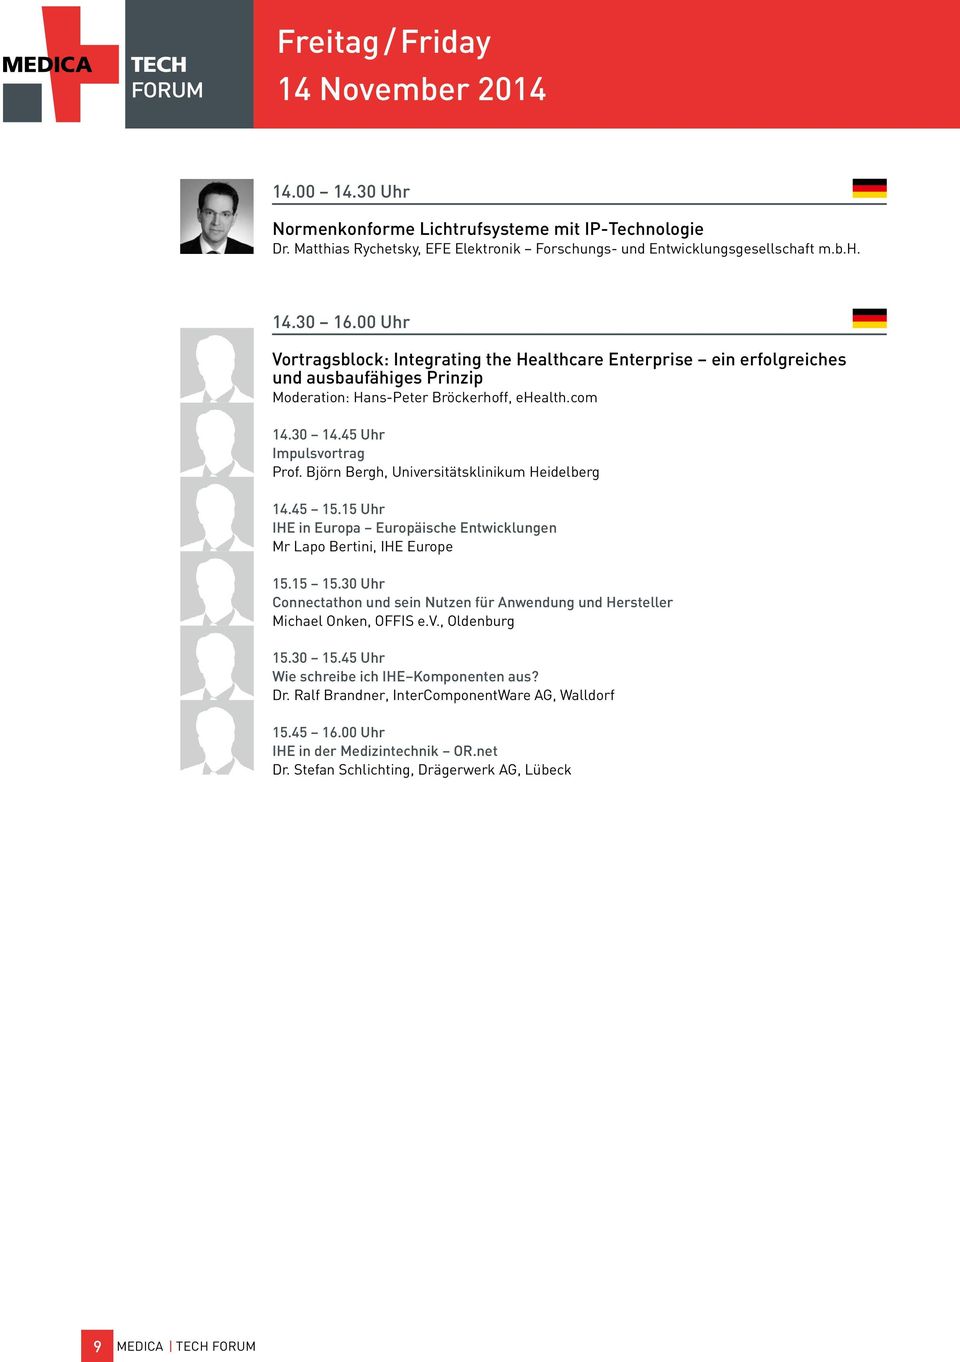 Björn Bergh, Universitätsklinikum Heidelberg 14.45 15.15 Uhr IHE in Europa Europäische Entwicklungen Mr Lapo Bertini, IHE Europe 15.15 15.